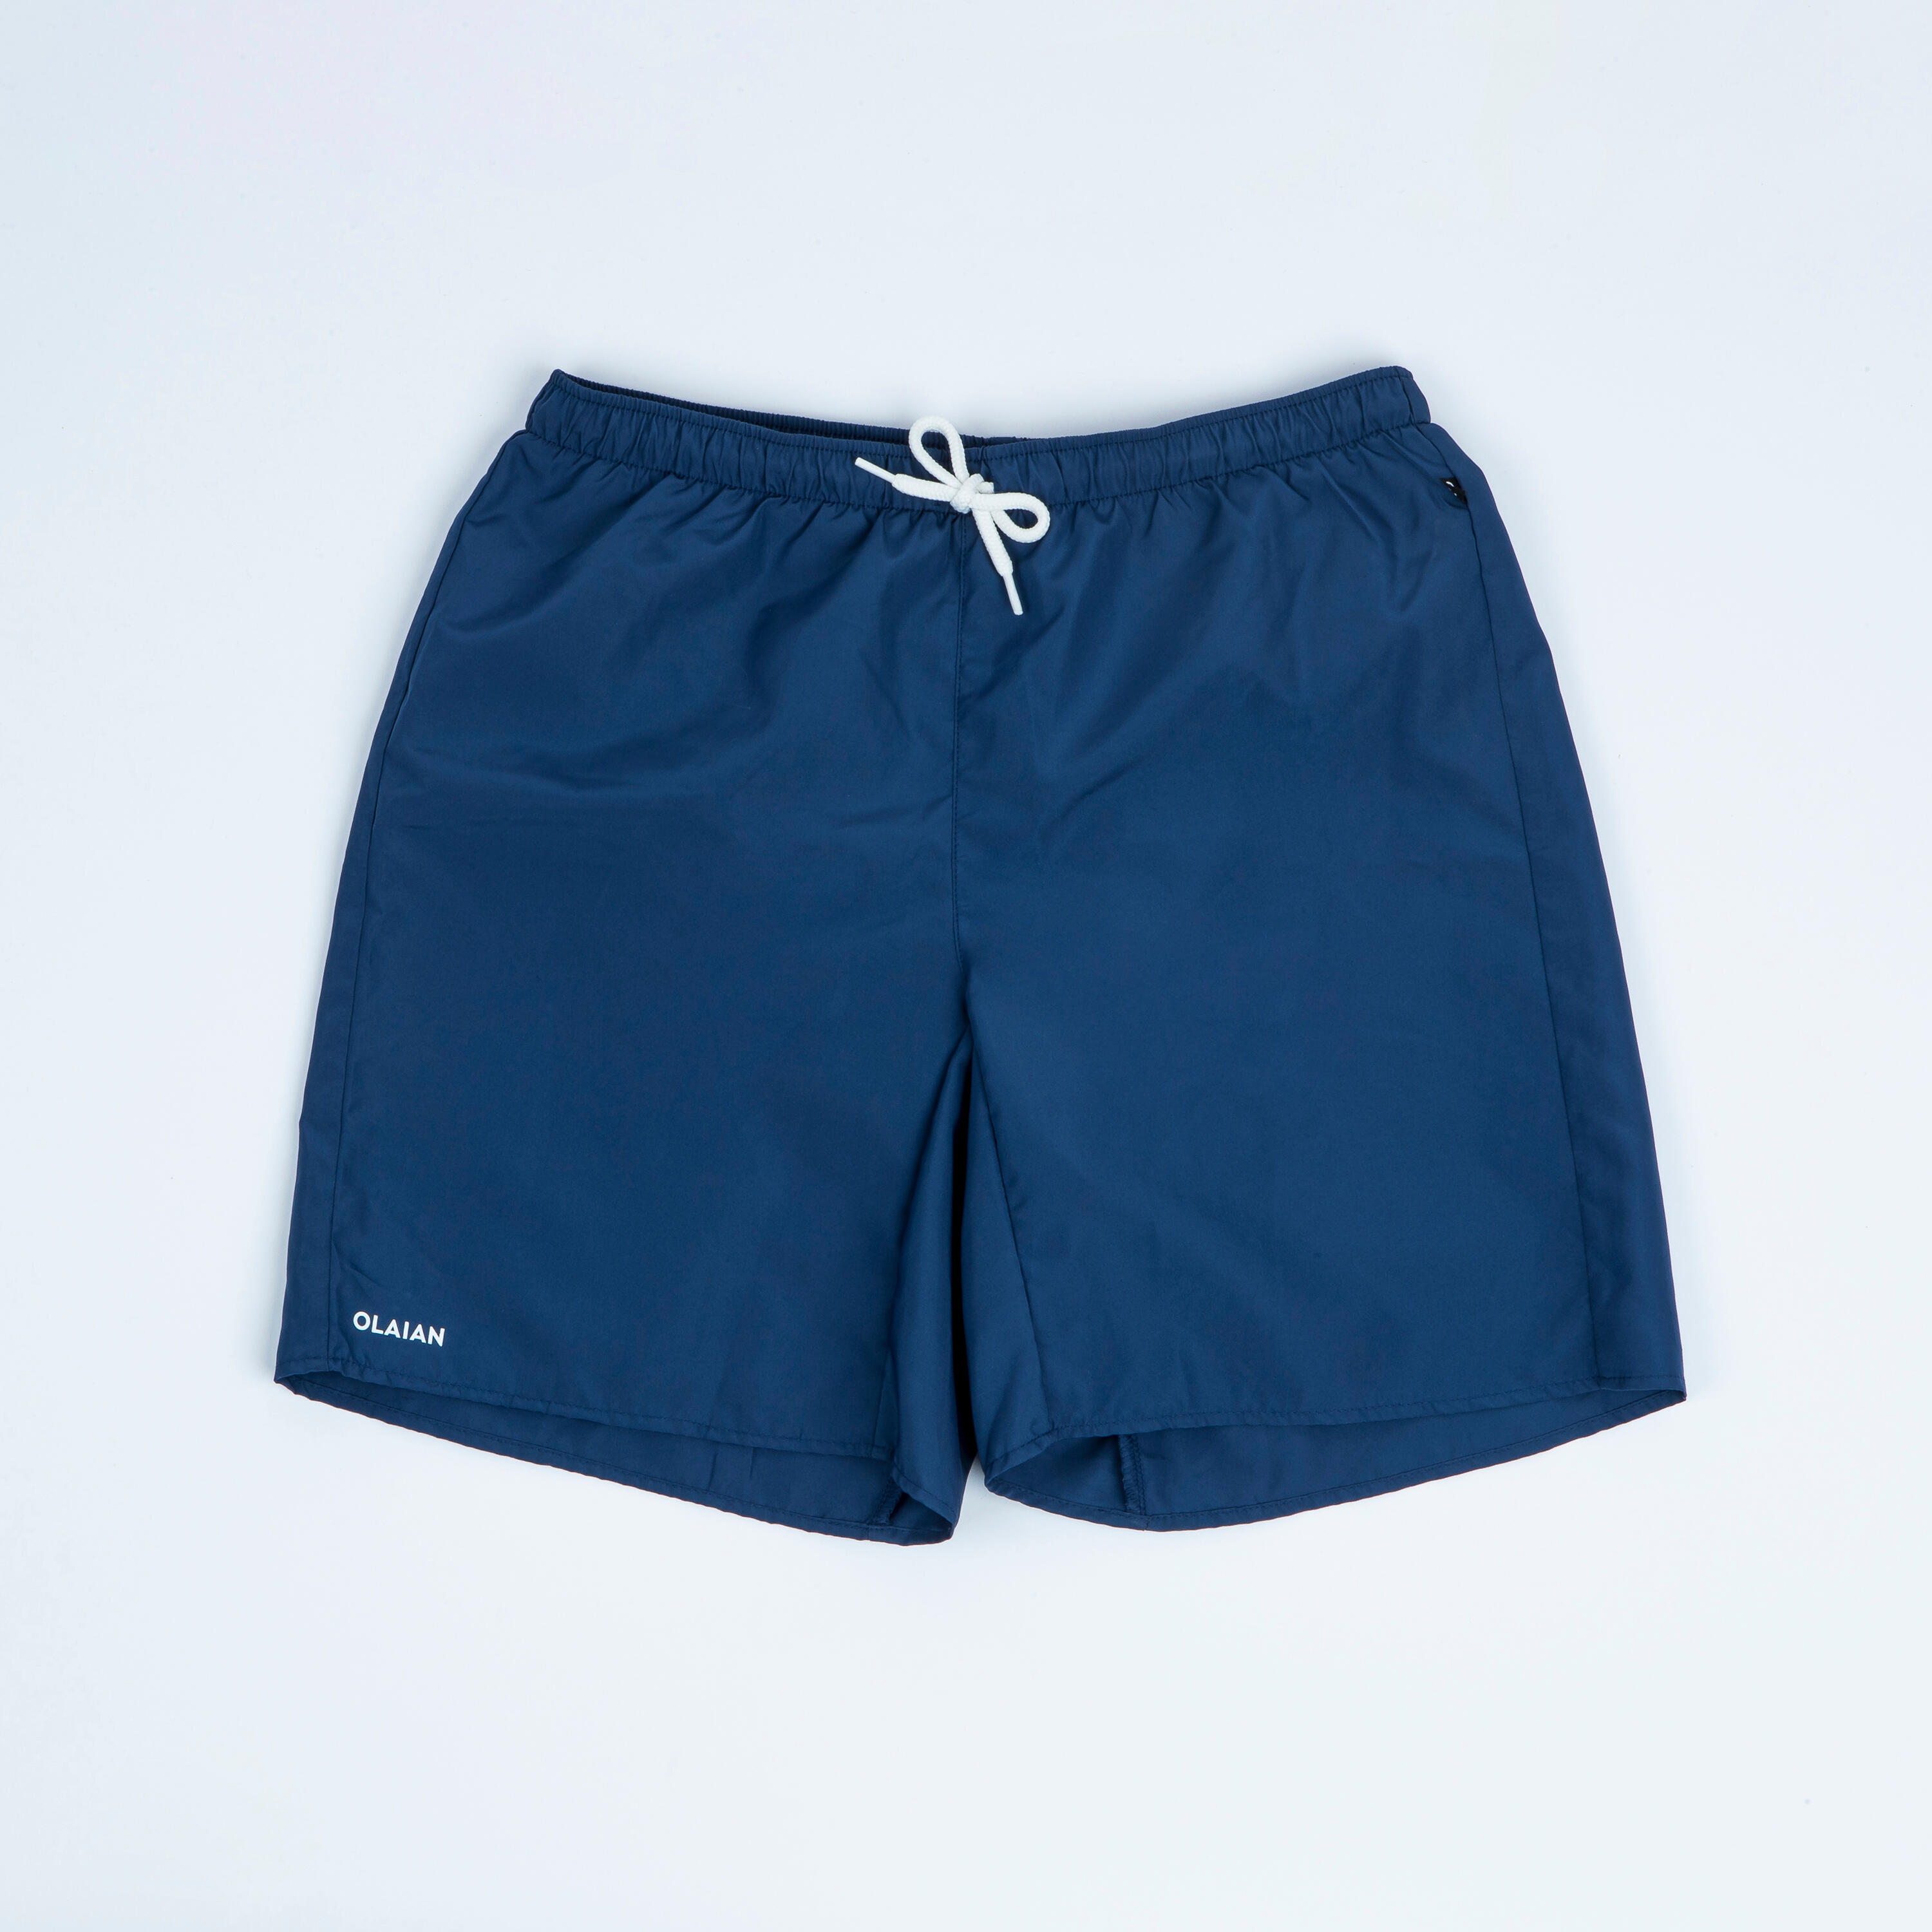 Boy's swim shorts -100 navy blue 4/5